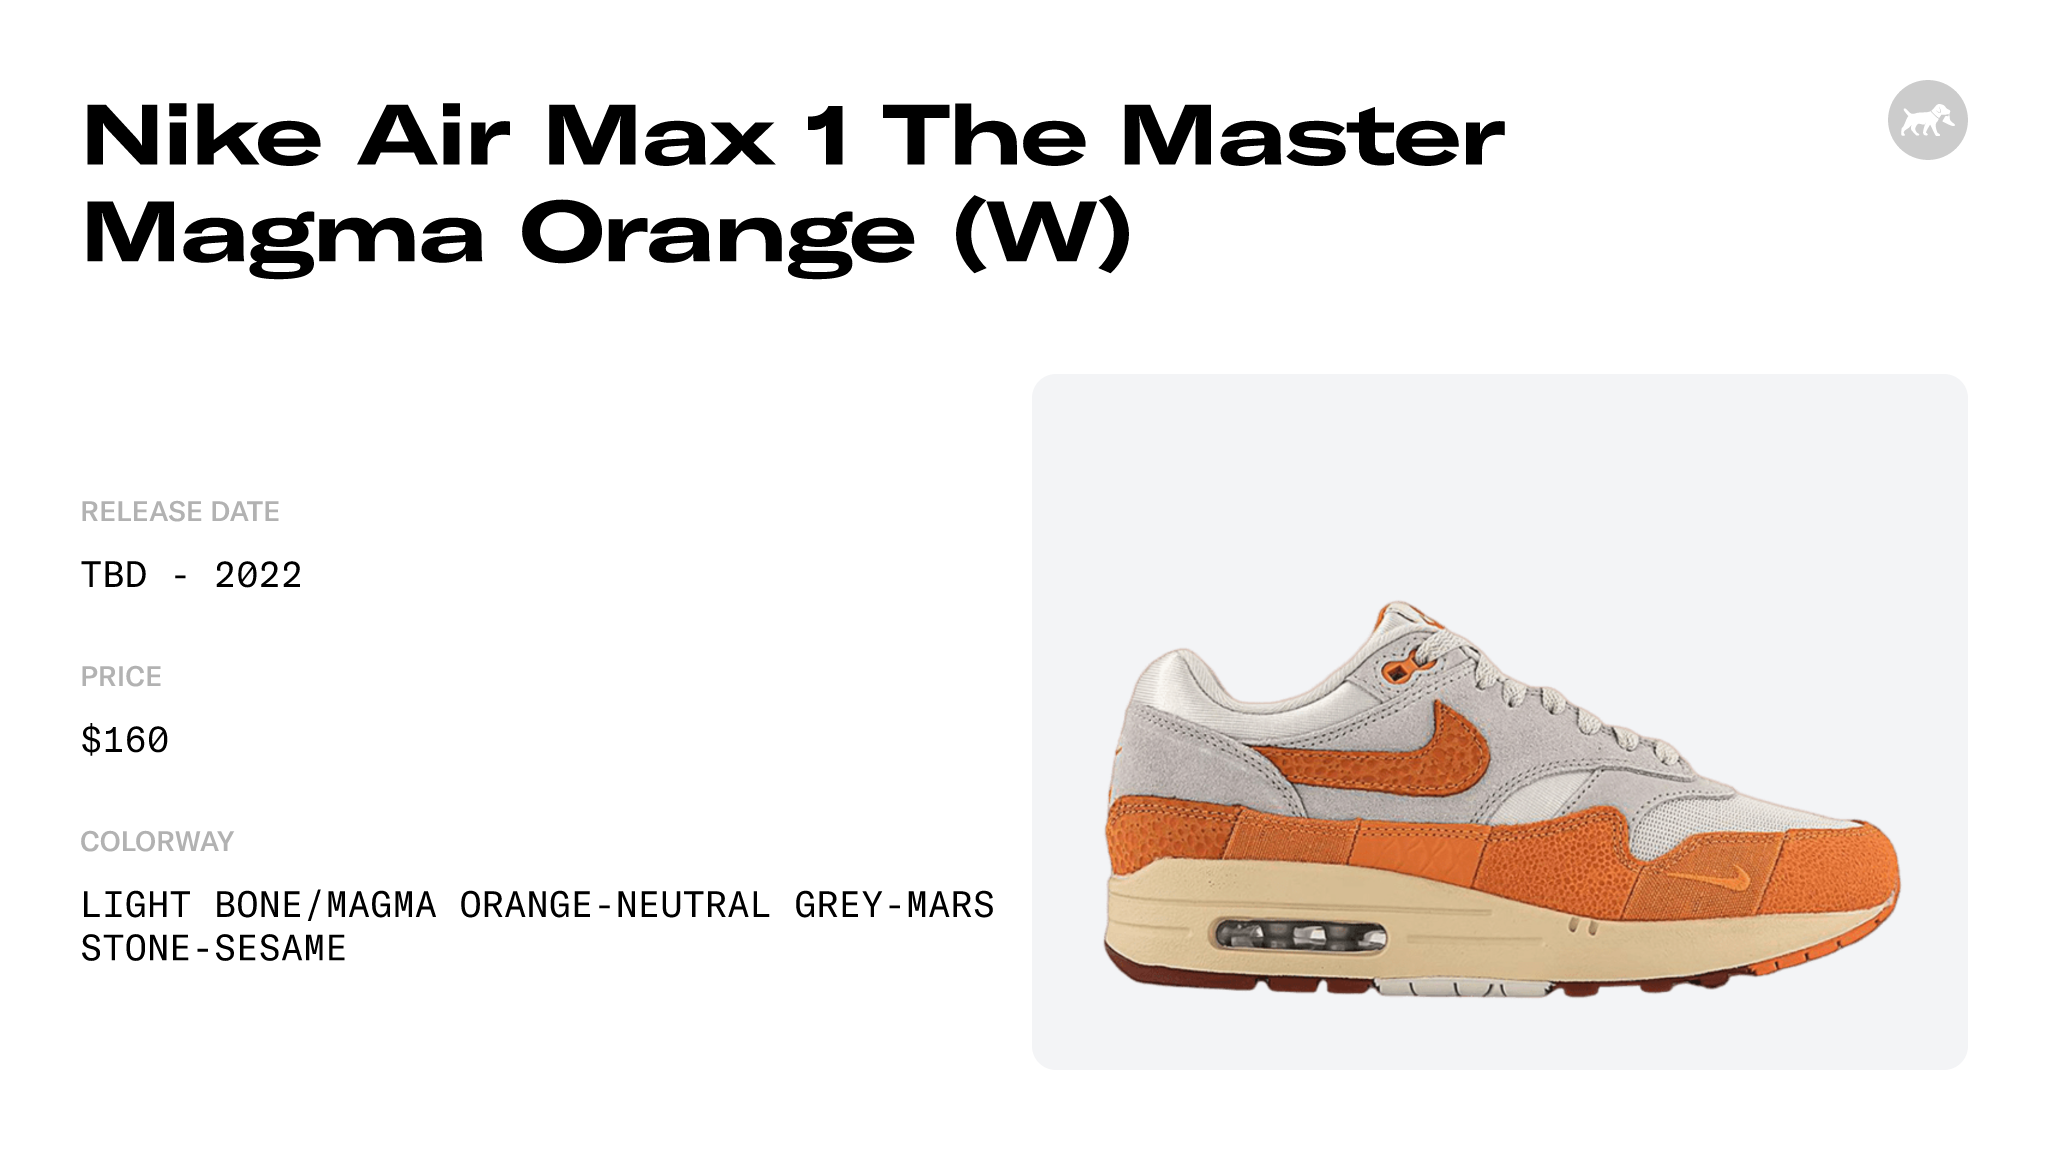 Nike Air Max 1 Master Magma Orange (Women's) - DZ4709-001 - US